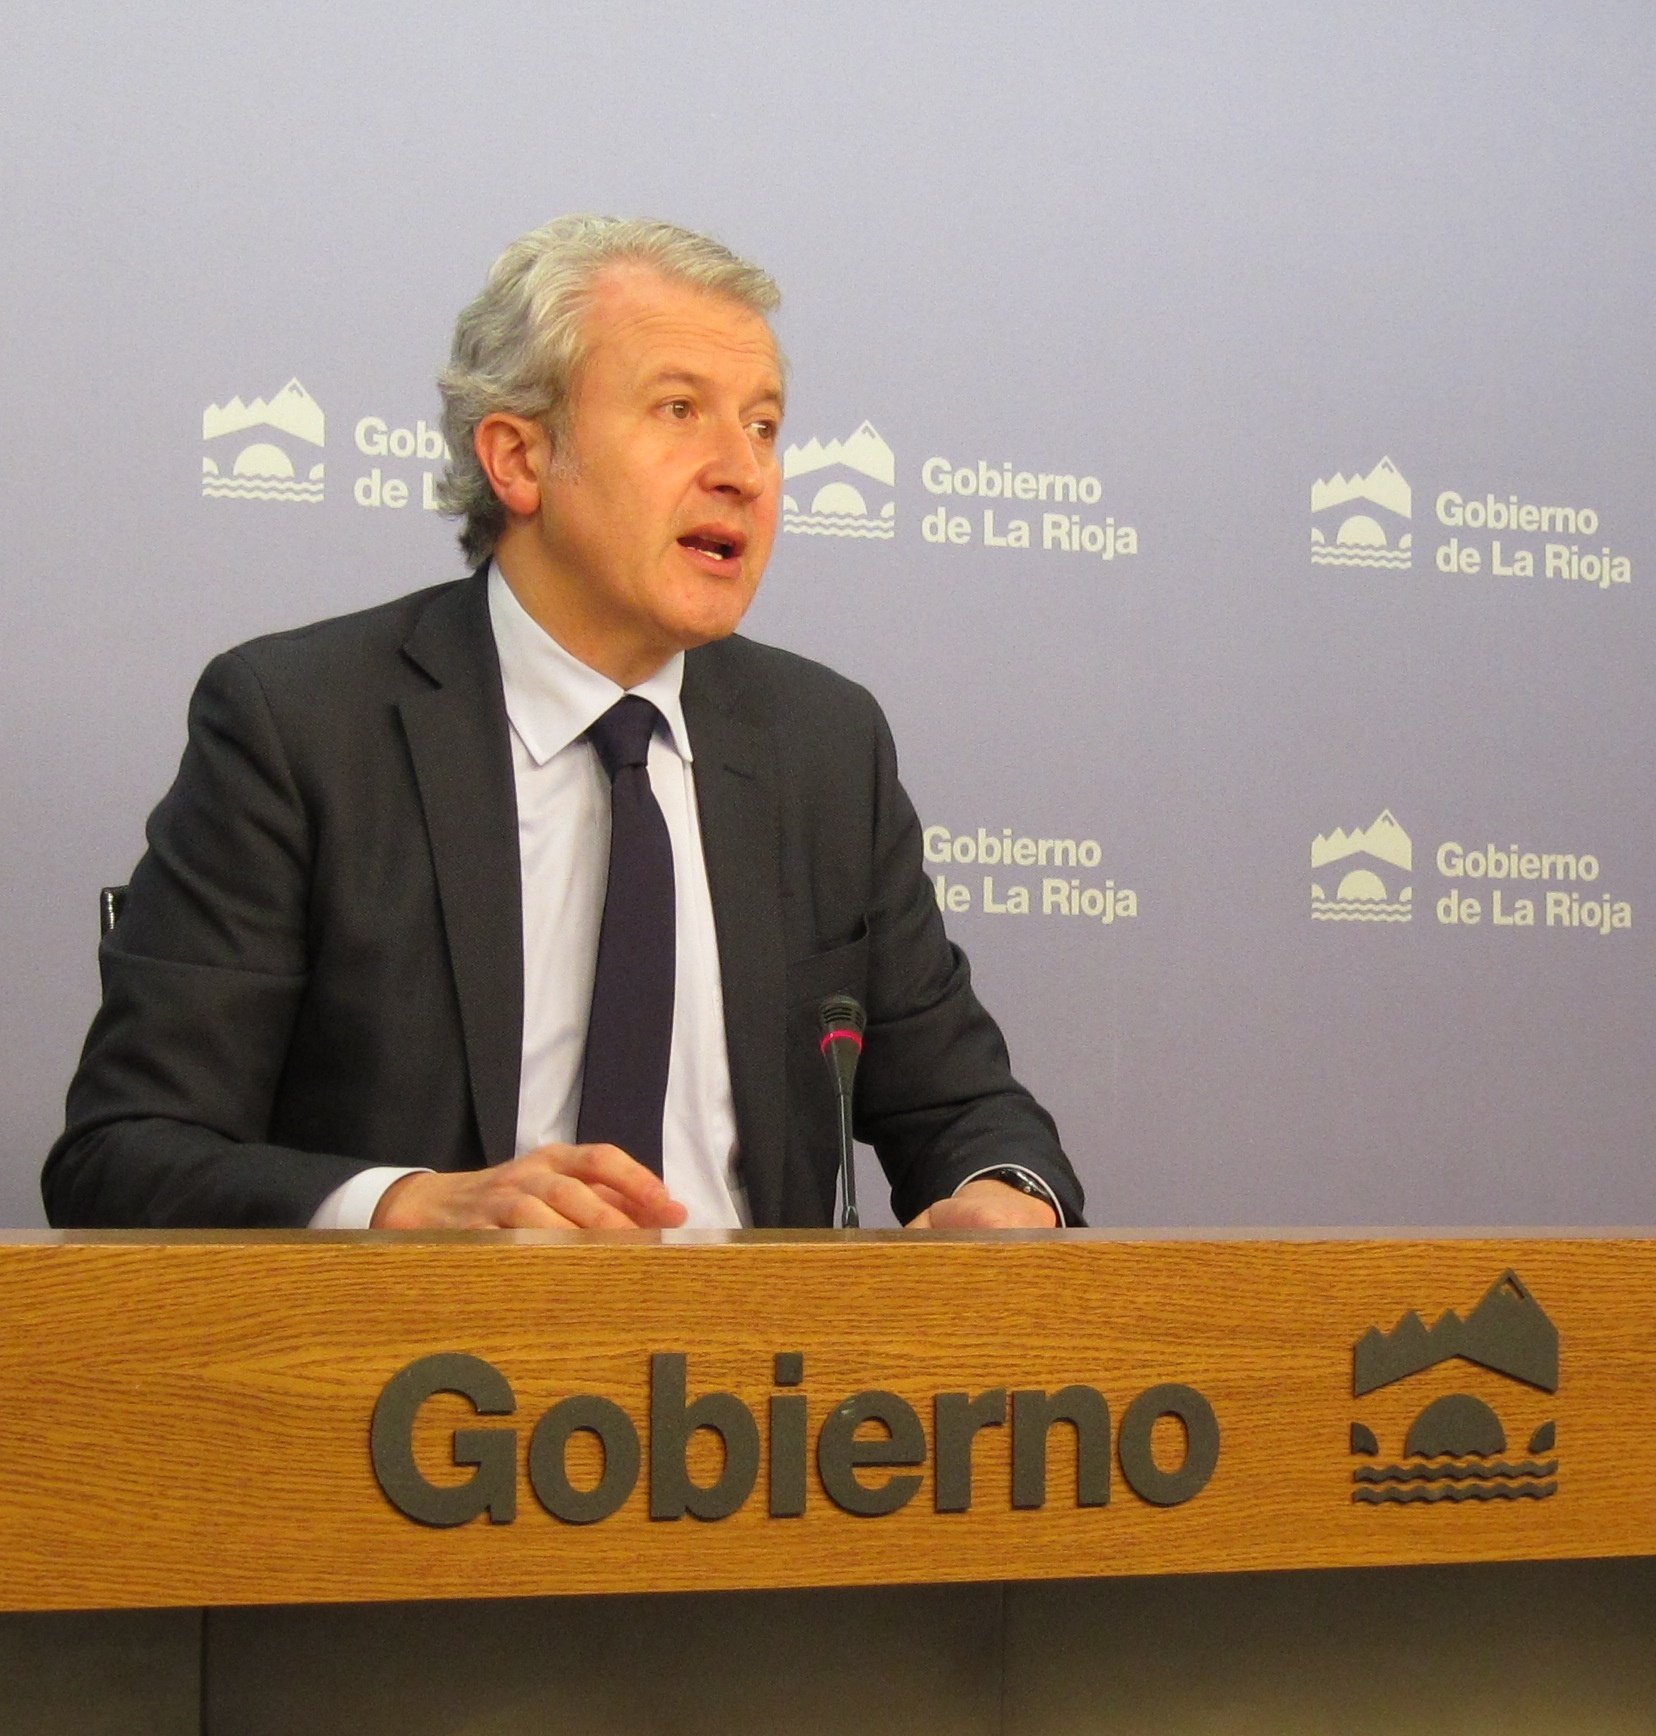 El Gobierno apoya la candidatura de la Alianza Cooperativa Internacional a los Premios Príncipe de Asturias